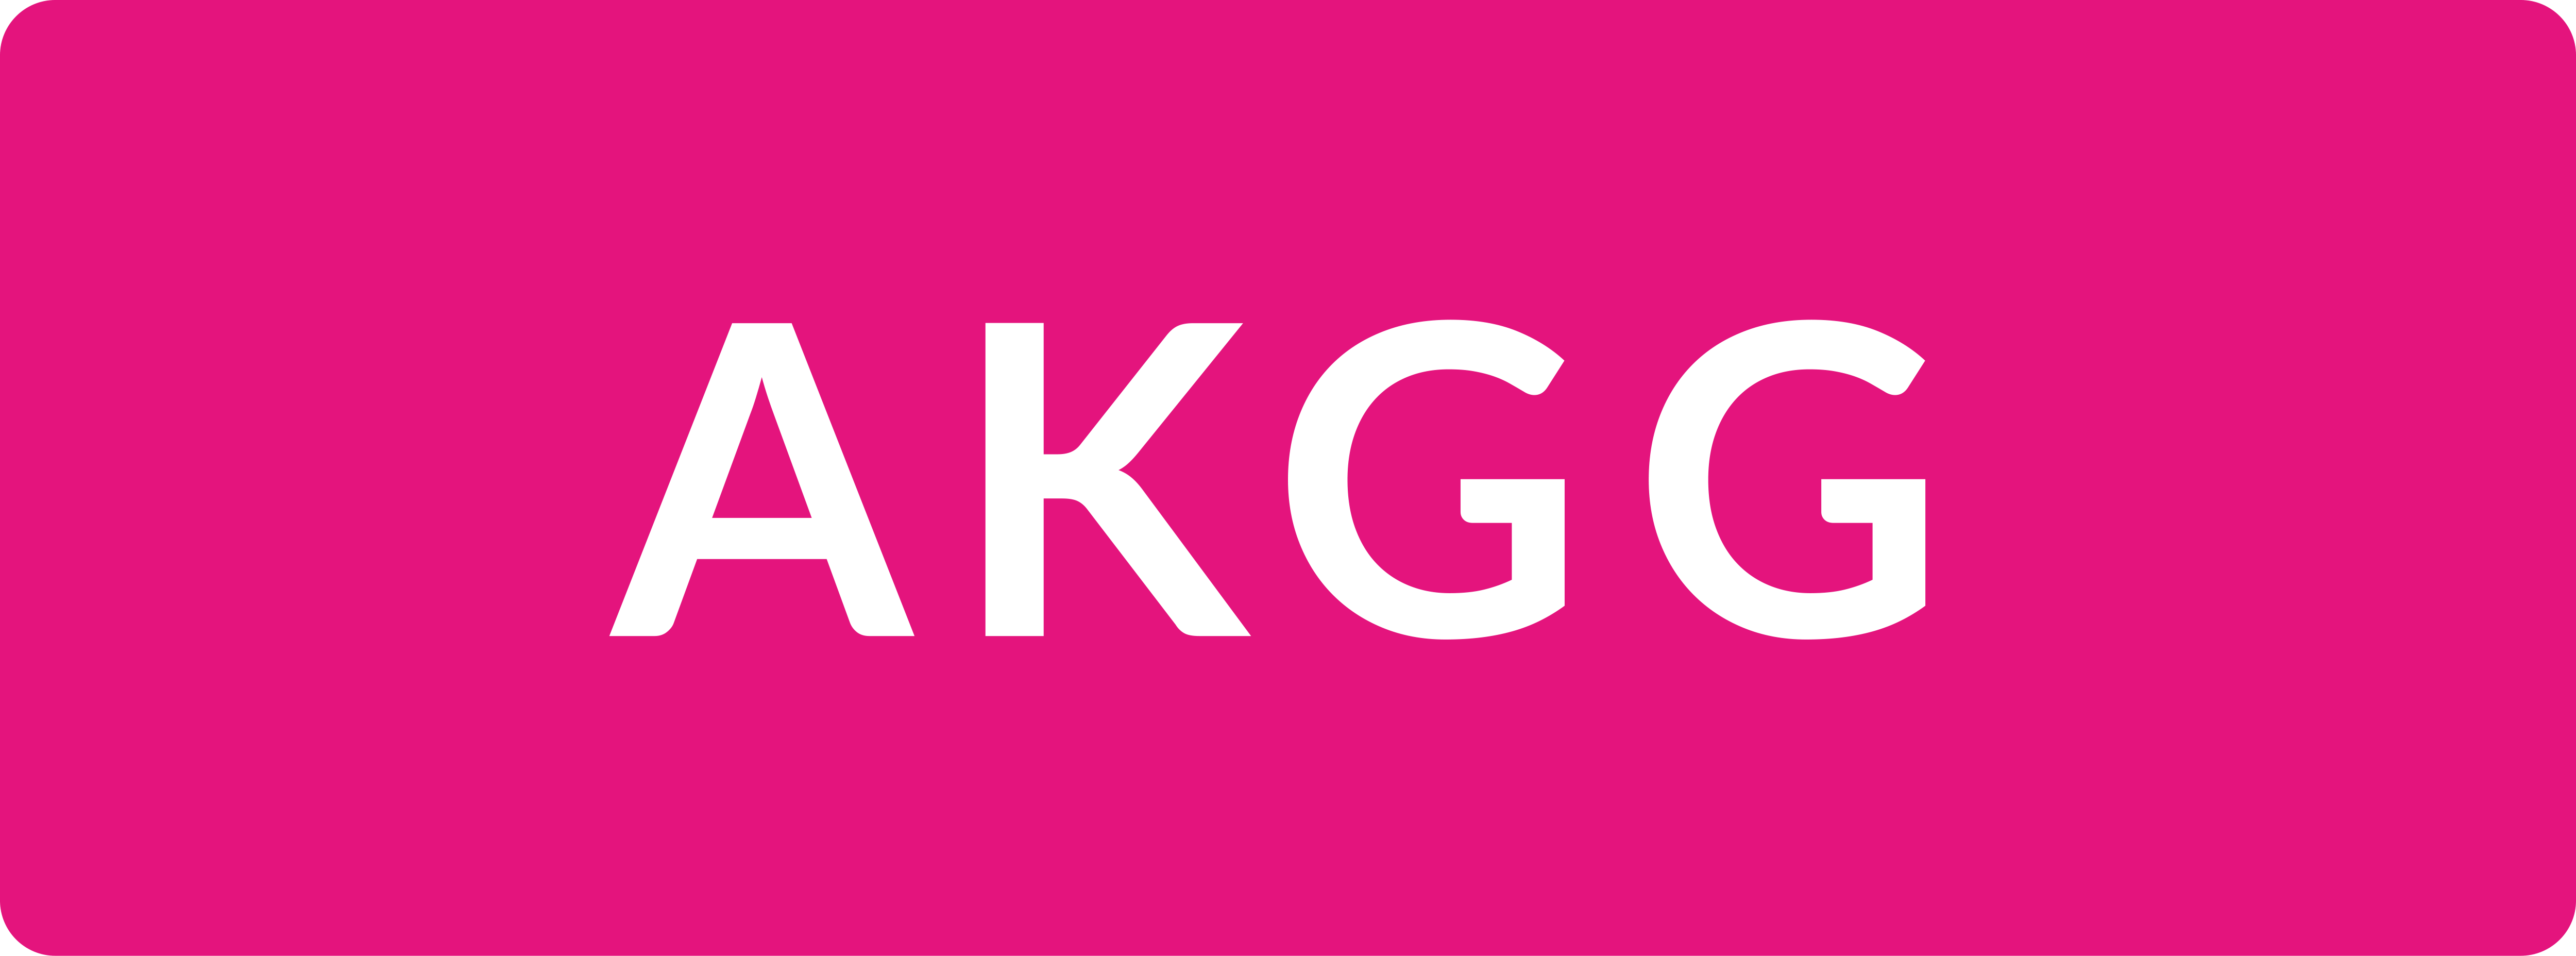 Logo AKGG